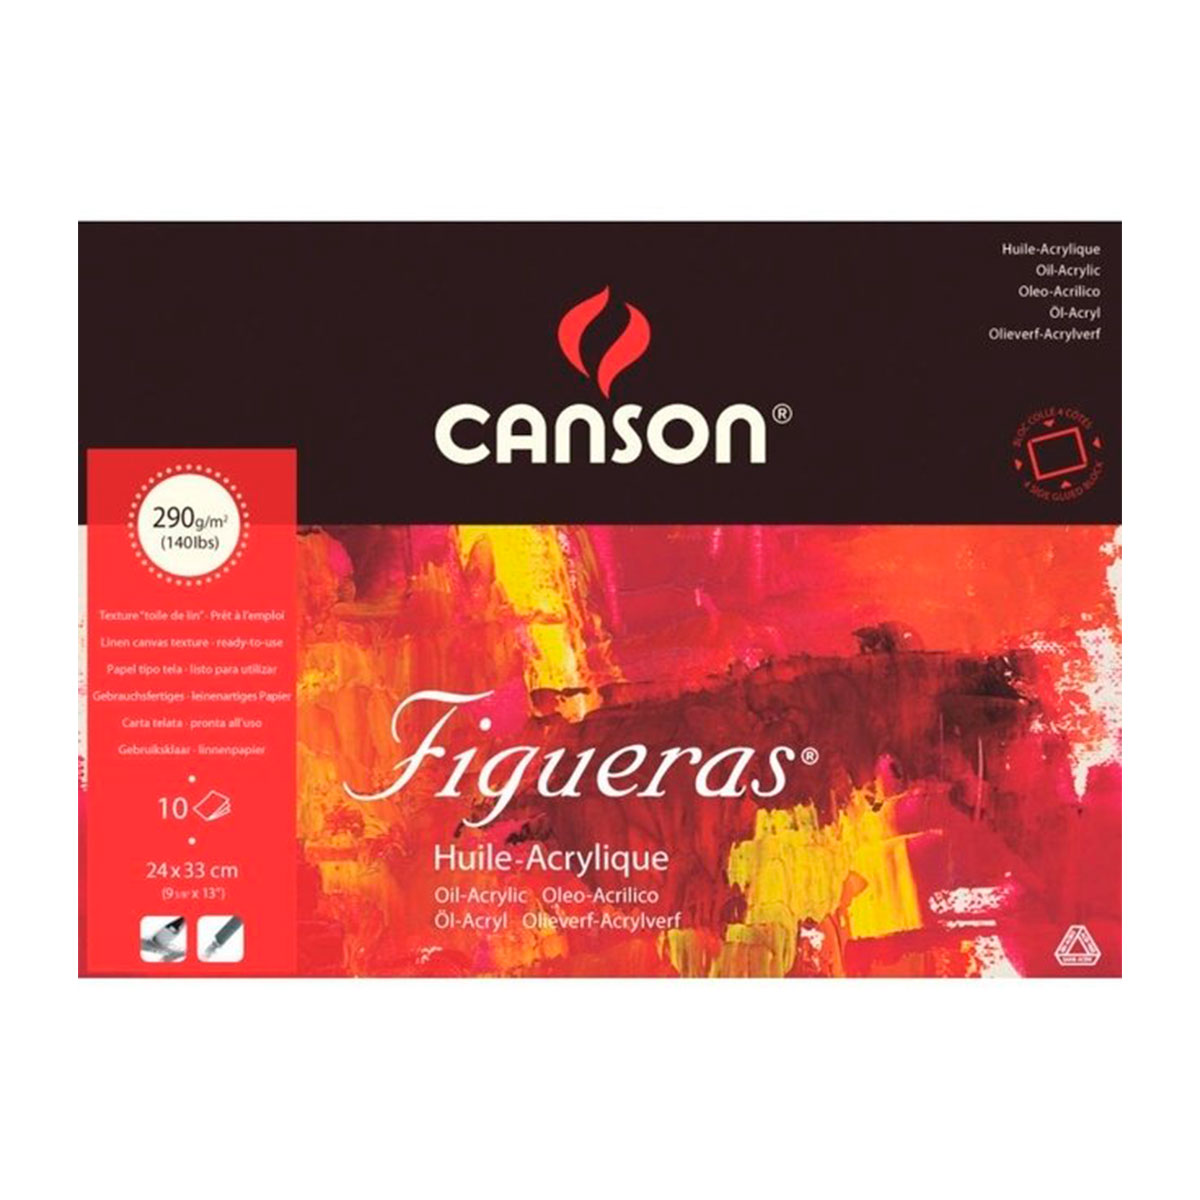 200857226 CANSON                                                       | BLOCK FIGUERAS 24X32CM 10 HOJAS DE 290 GRAMOS                                                                                                                                                                                                   